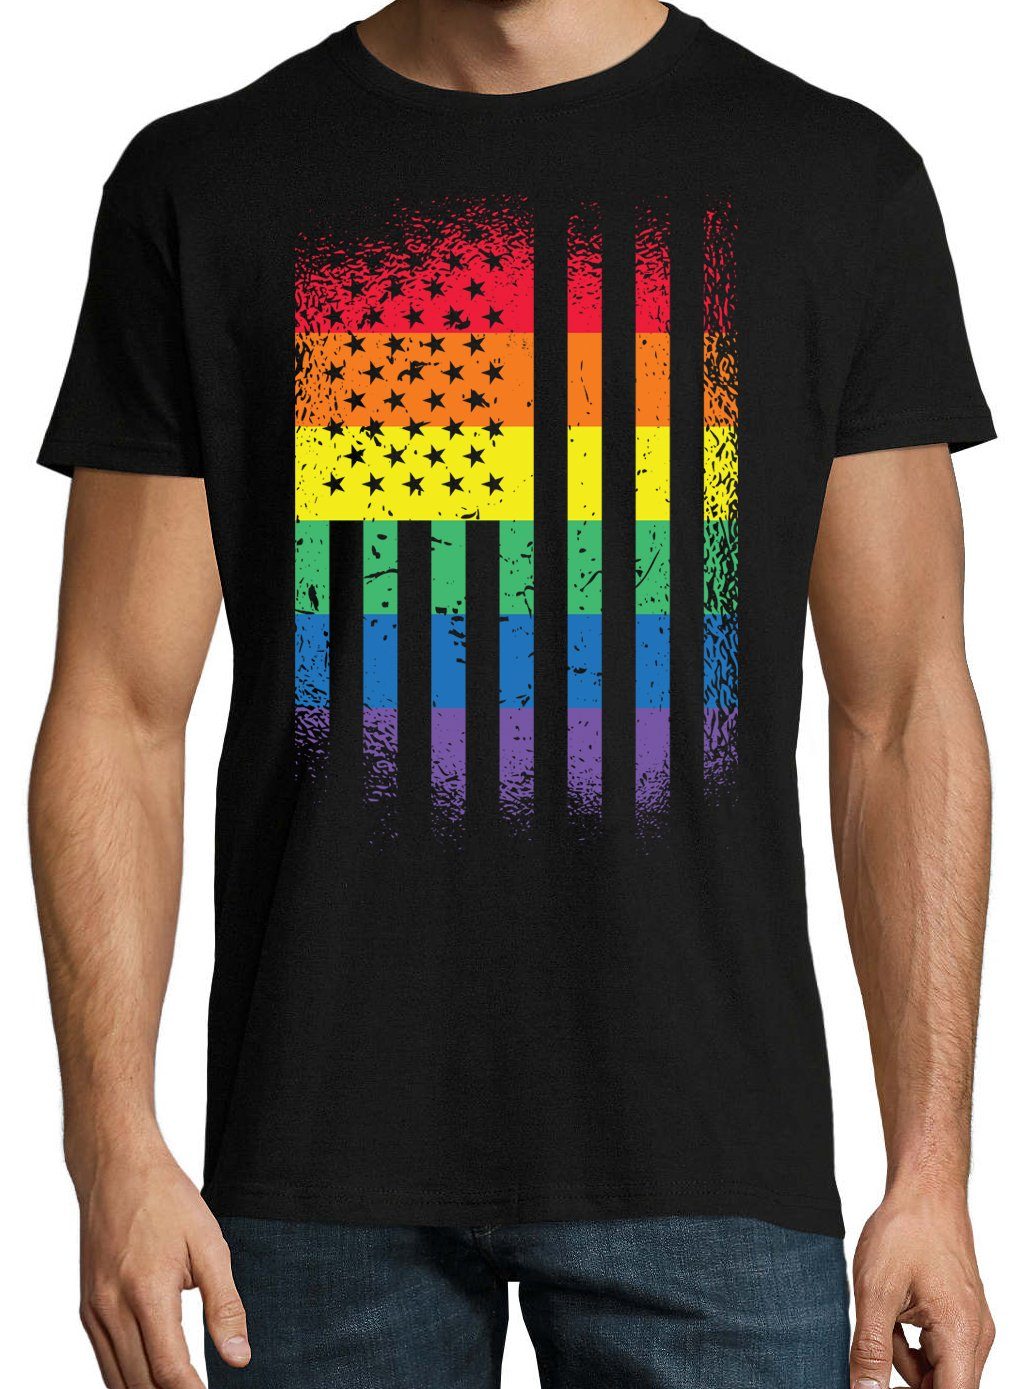 Frontdruck Amerika T-Shirt Designz Trendigem Flagge Herren Shirt Schwarz mit Youth Pride